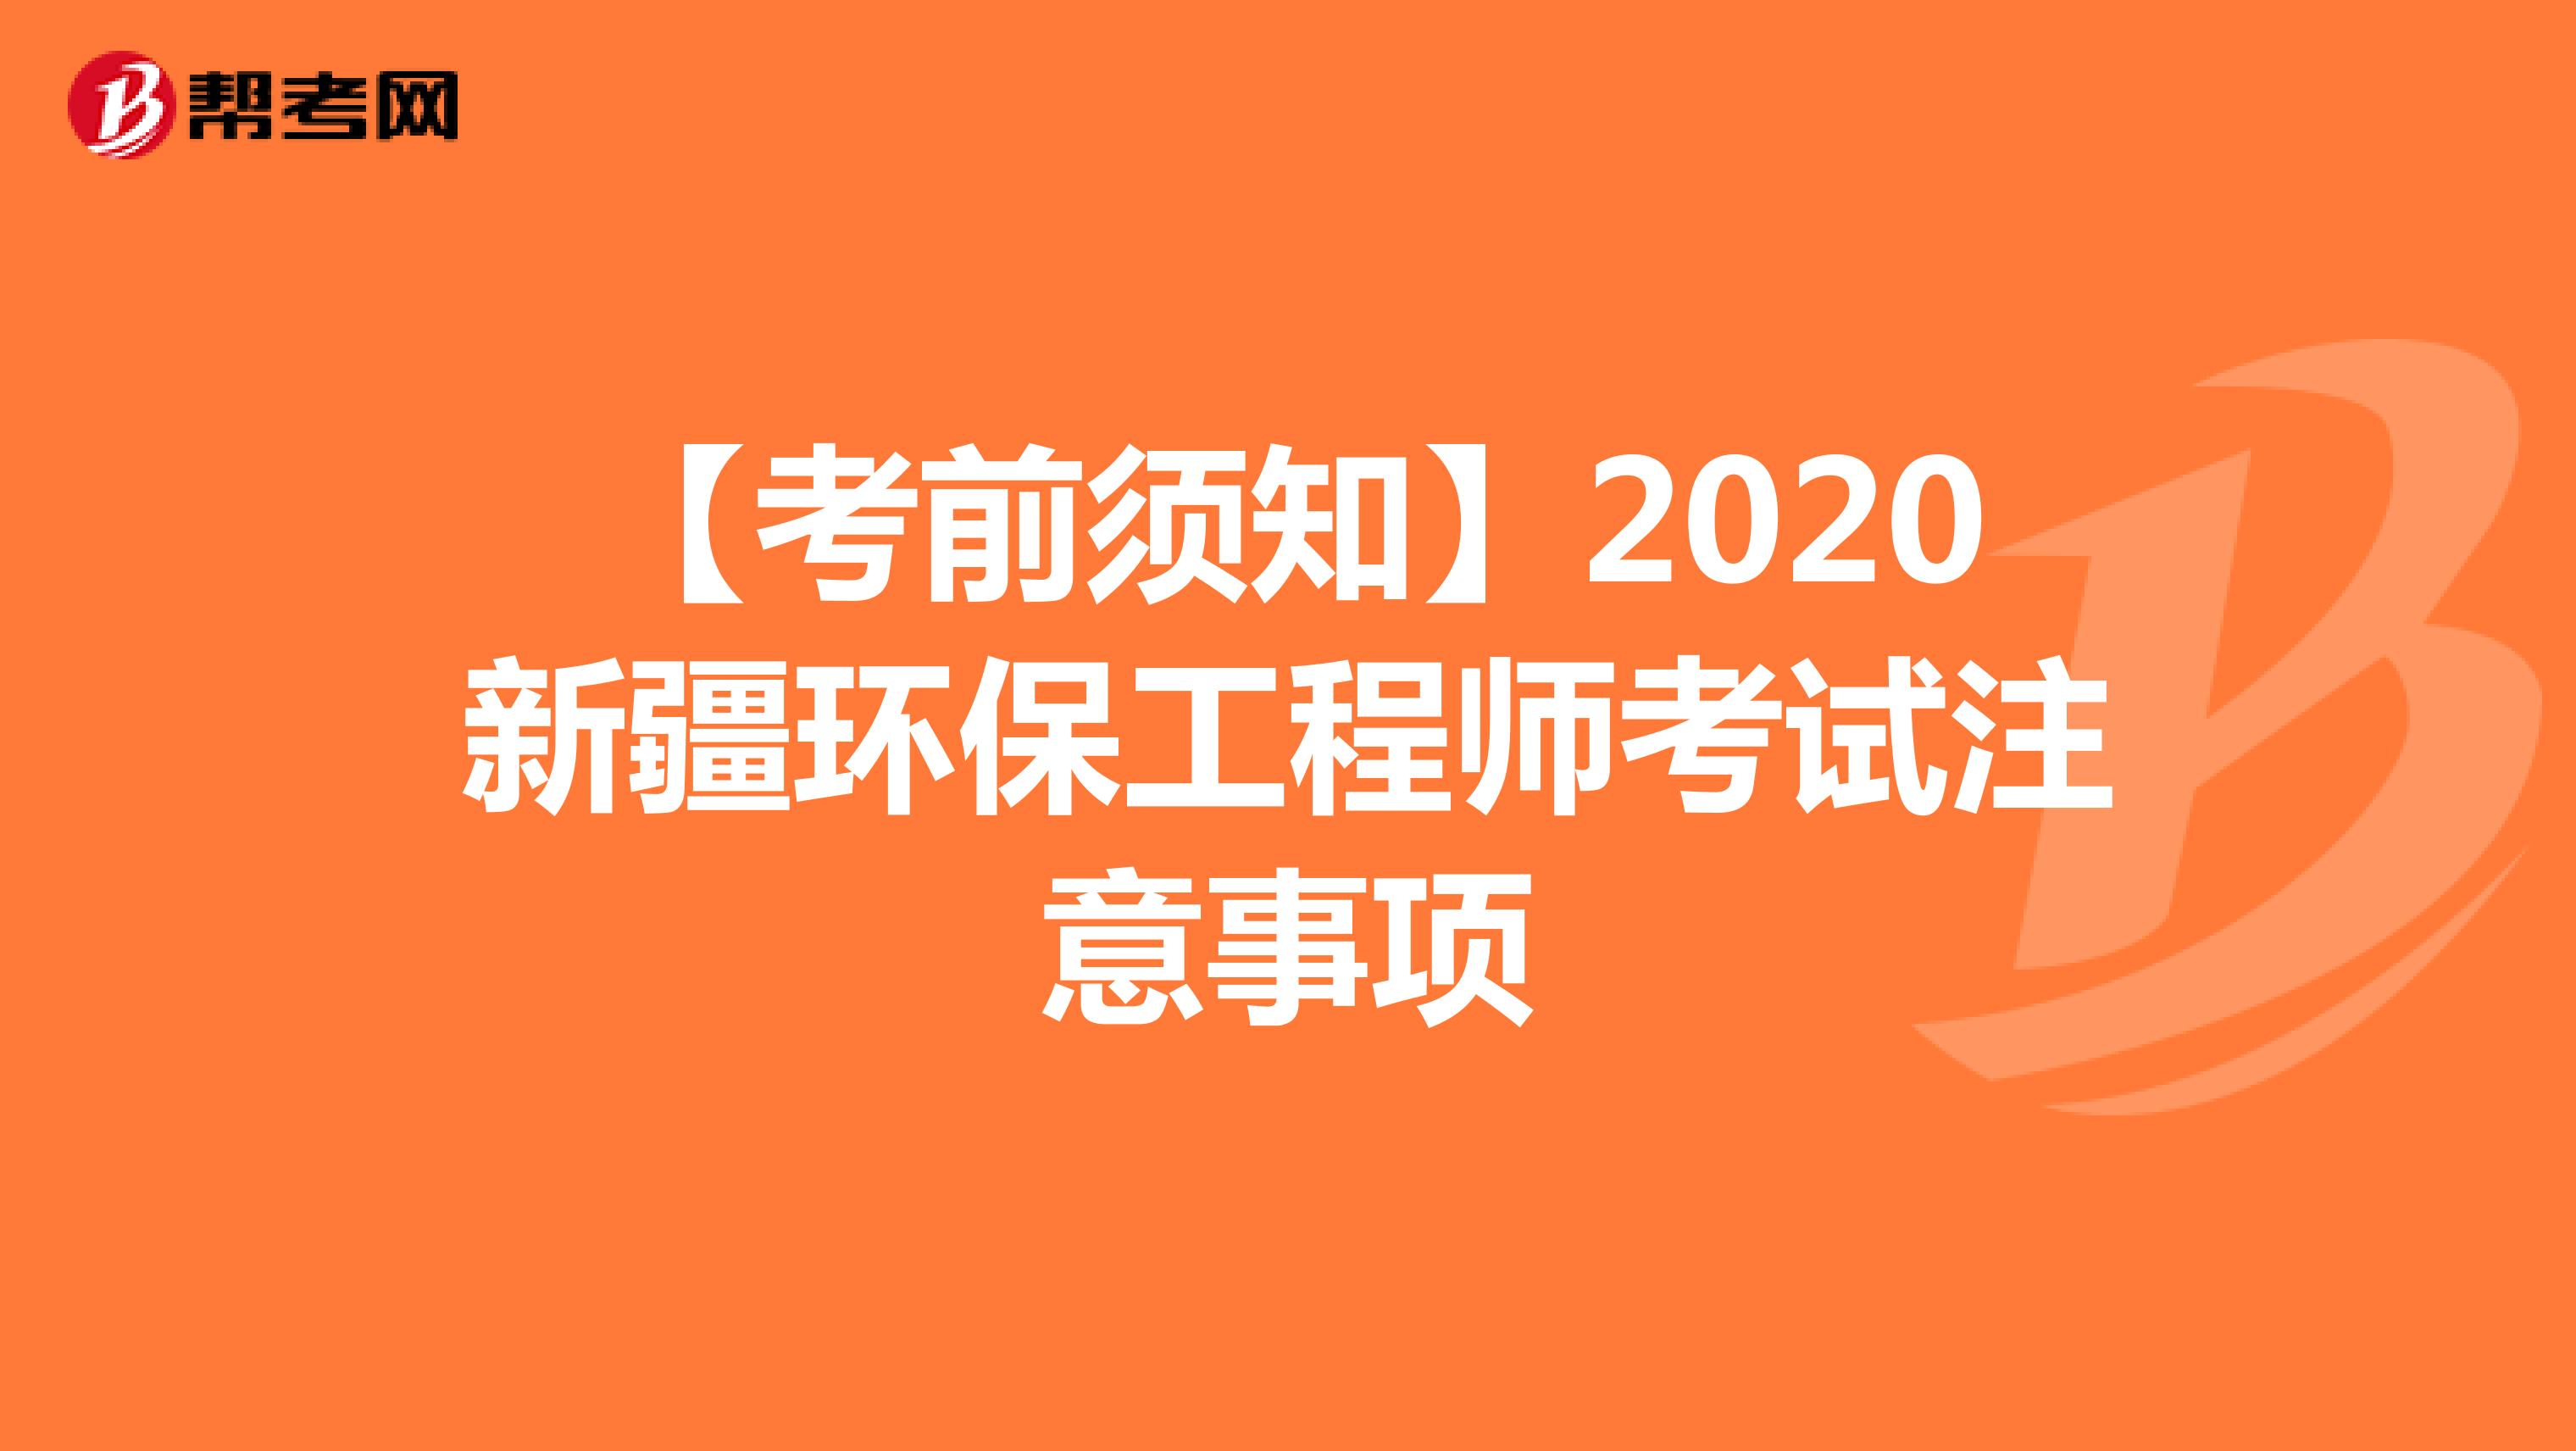 【考前须知】2020新疆环保工程师考试注意事项